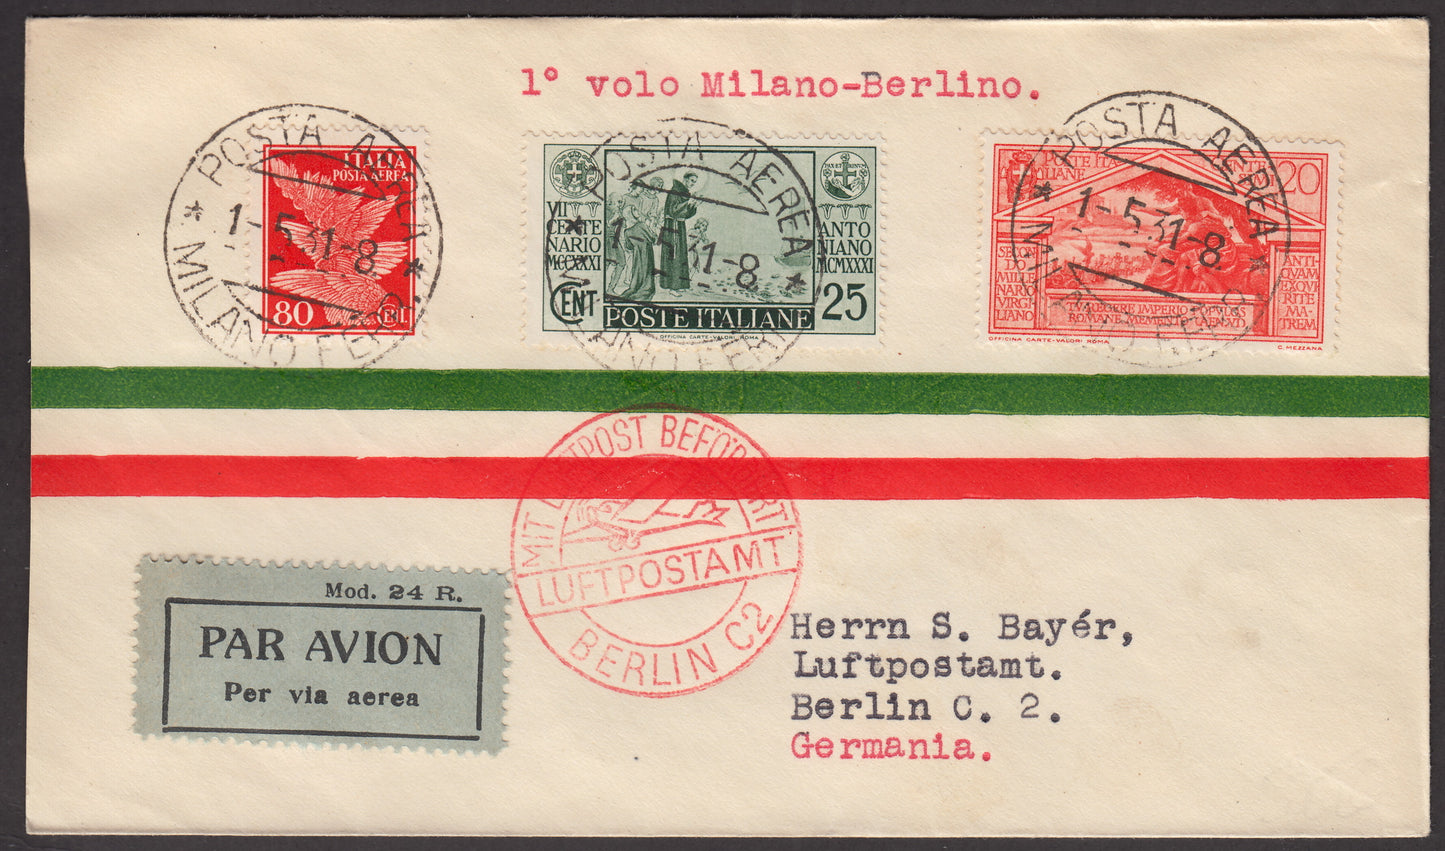 1931 - Primo volo Milano - Berlino 1/5/31 affrancato con S. Antonio c. 25 verde + Virgilio c.20 arancio + PA c. 80 arancio (293 + 283 + A13)